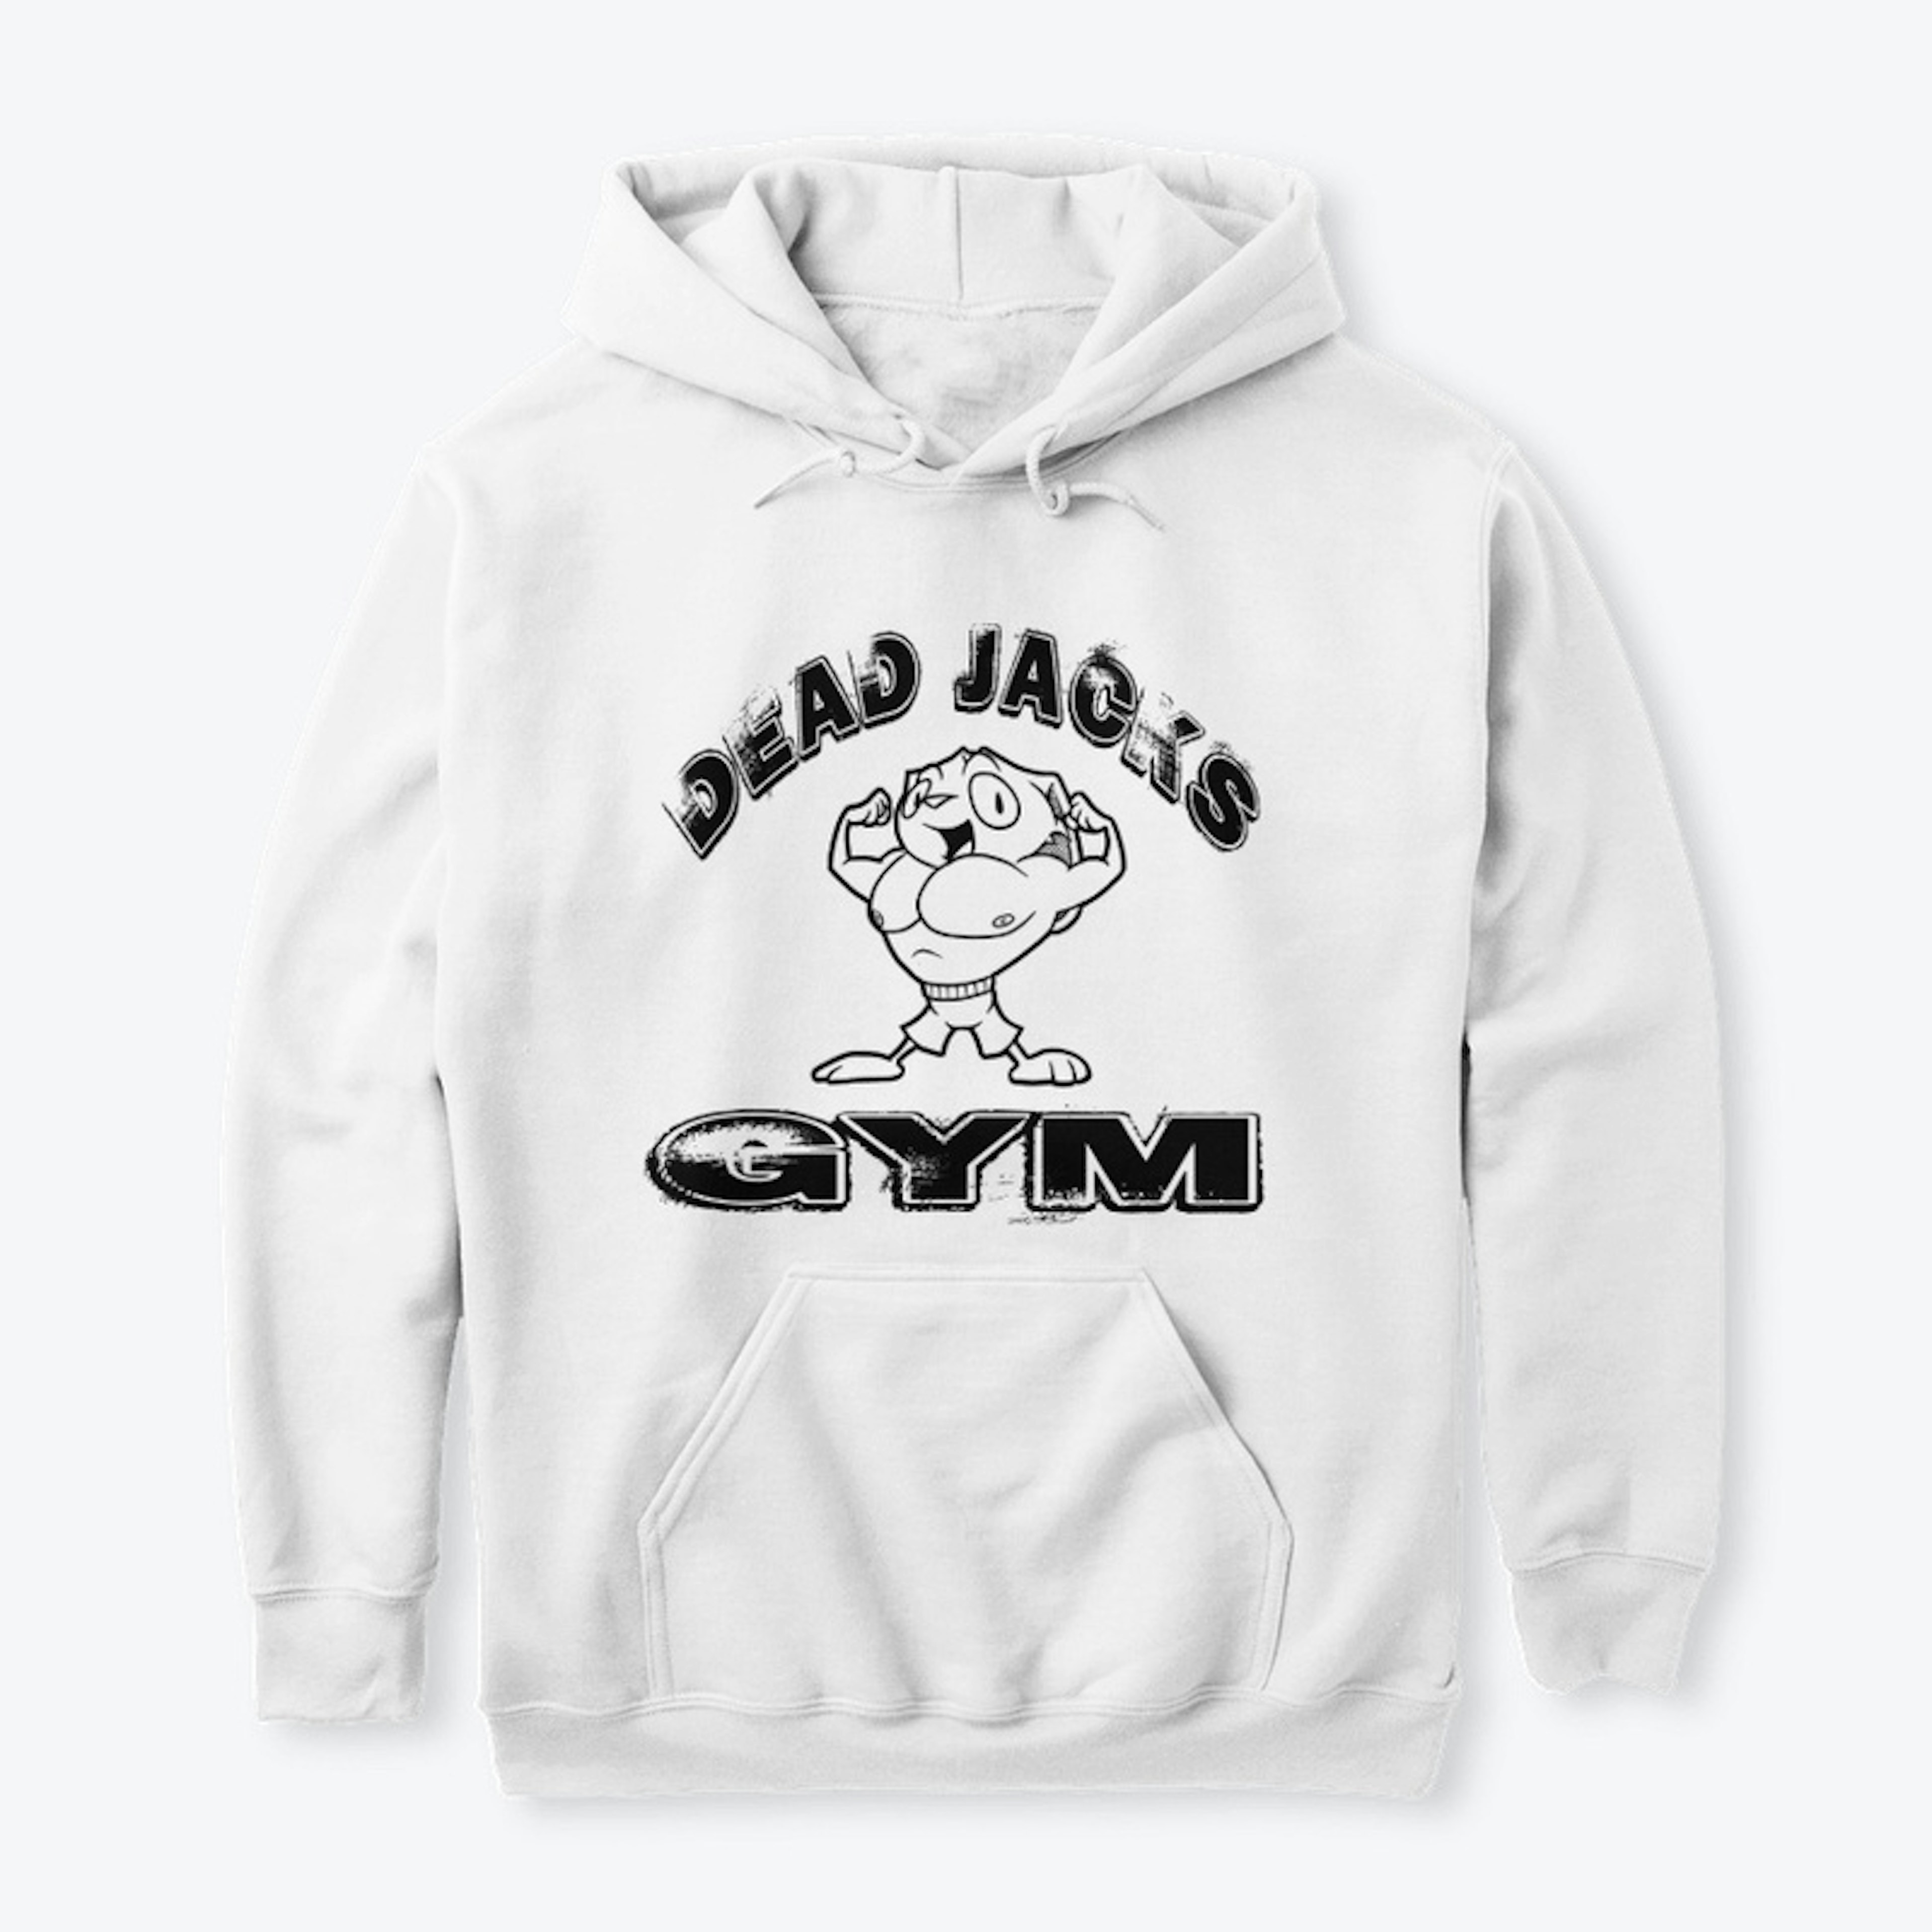 Dead JACK's Gym (light)